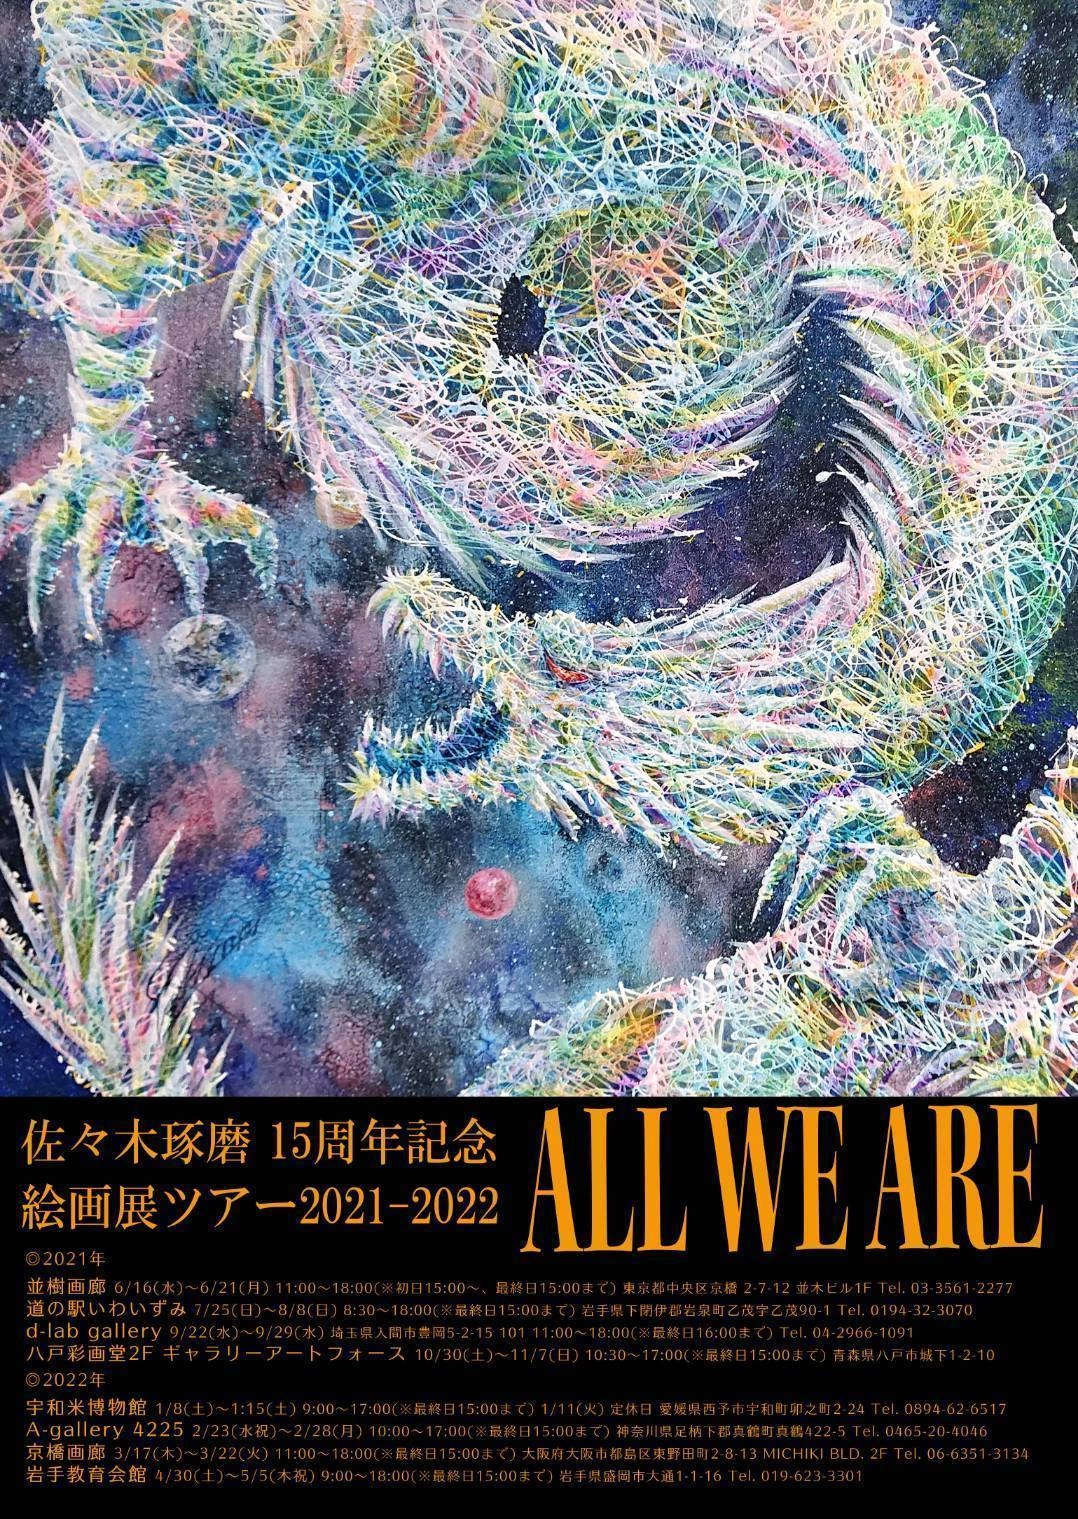 佐々木琢磨 15周年記念絵画展ツアー2021-2022「ALL WE ARE」